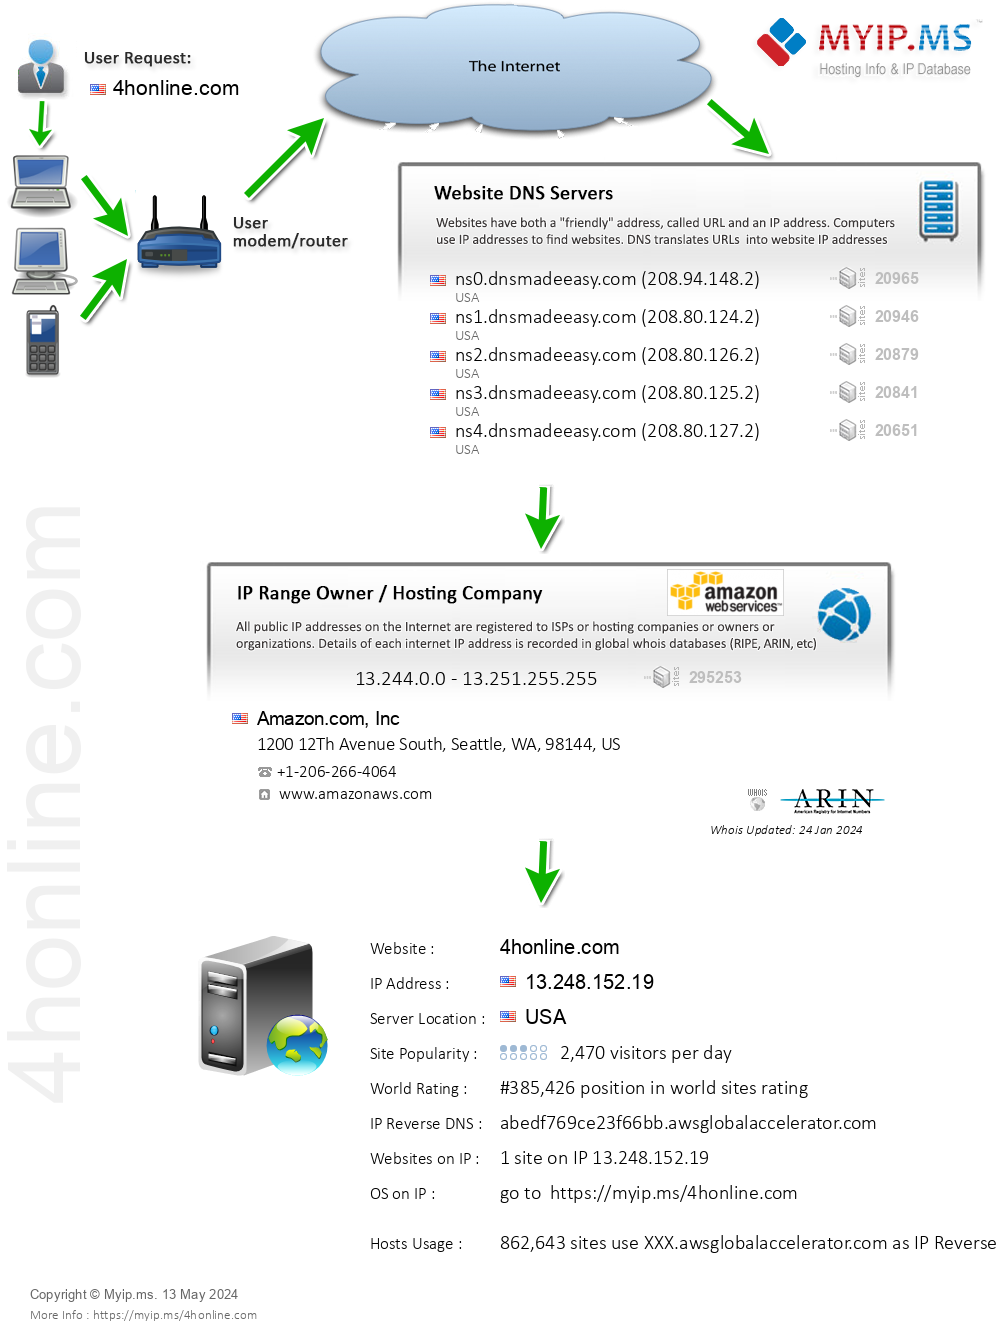 4honline.com - Website Hosting Visual IP Diagram